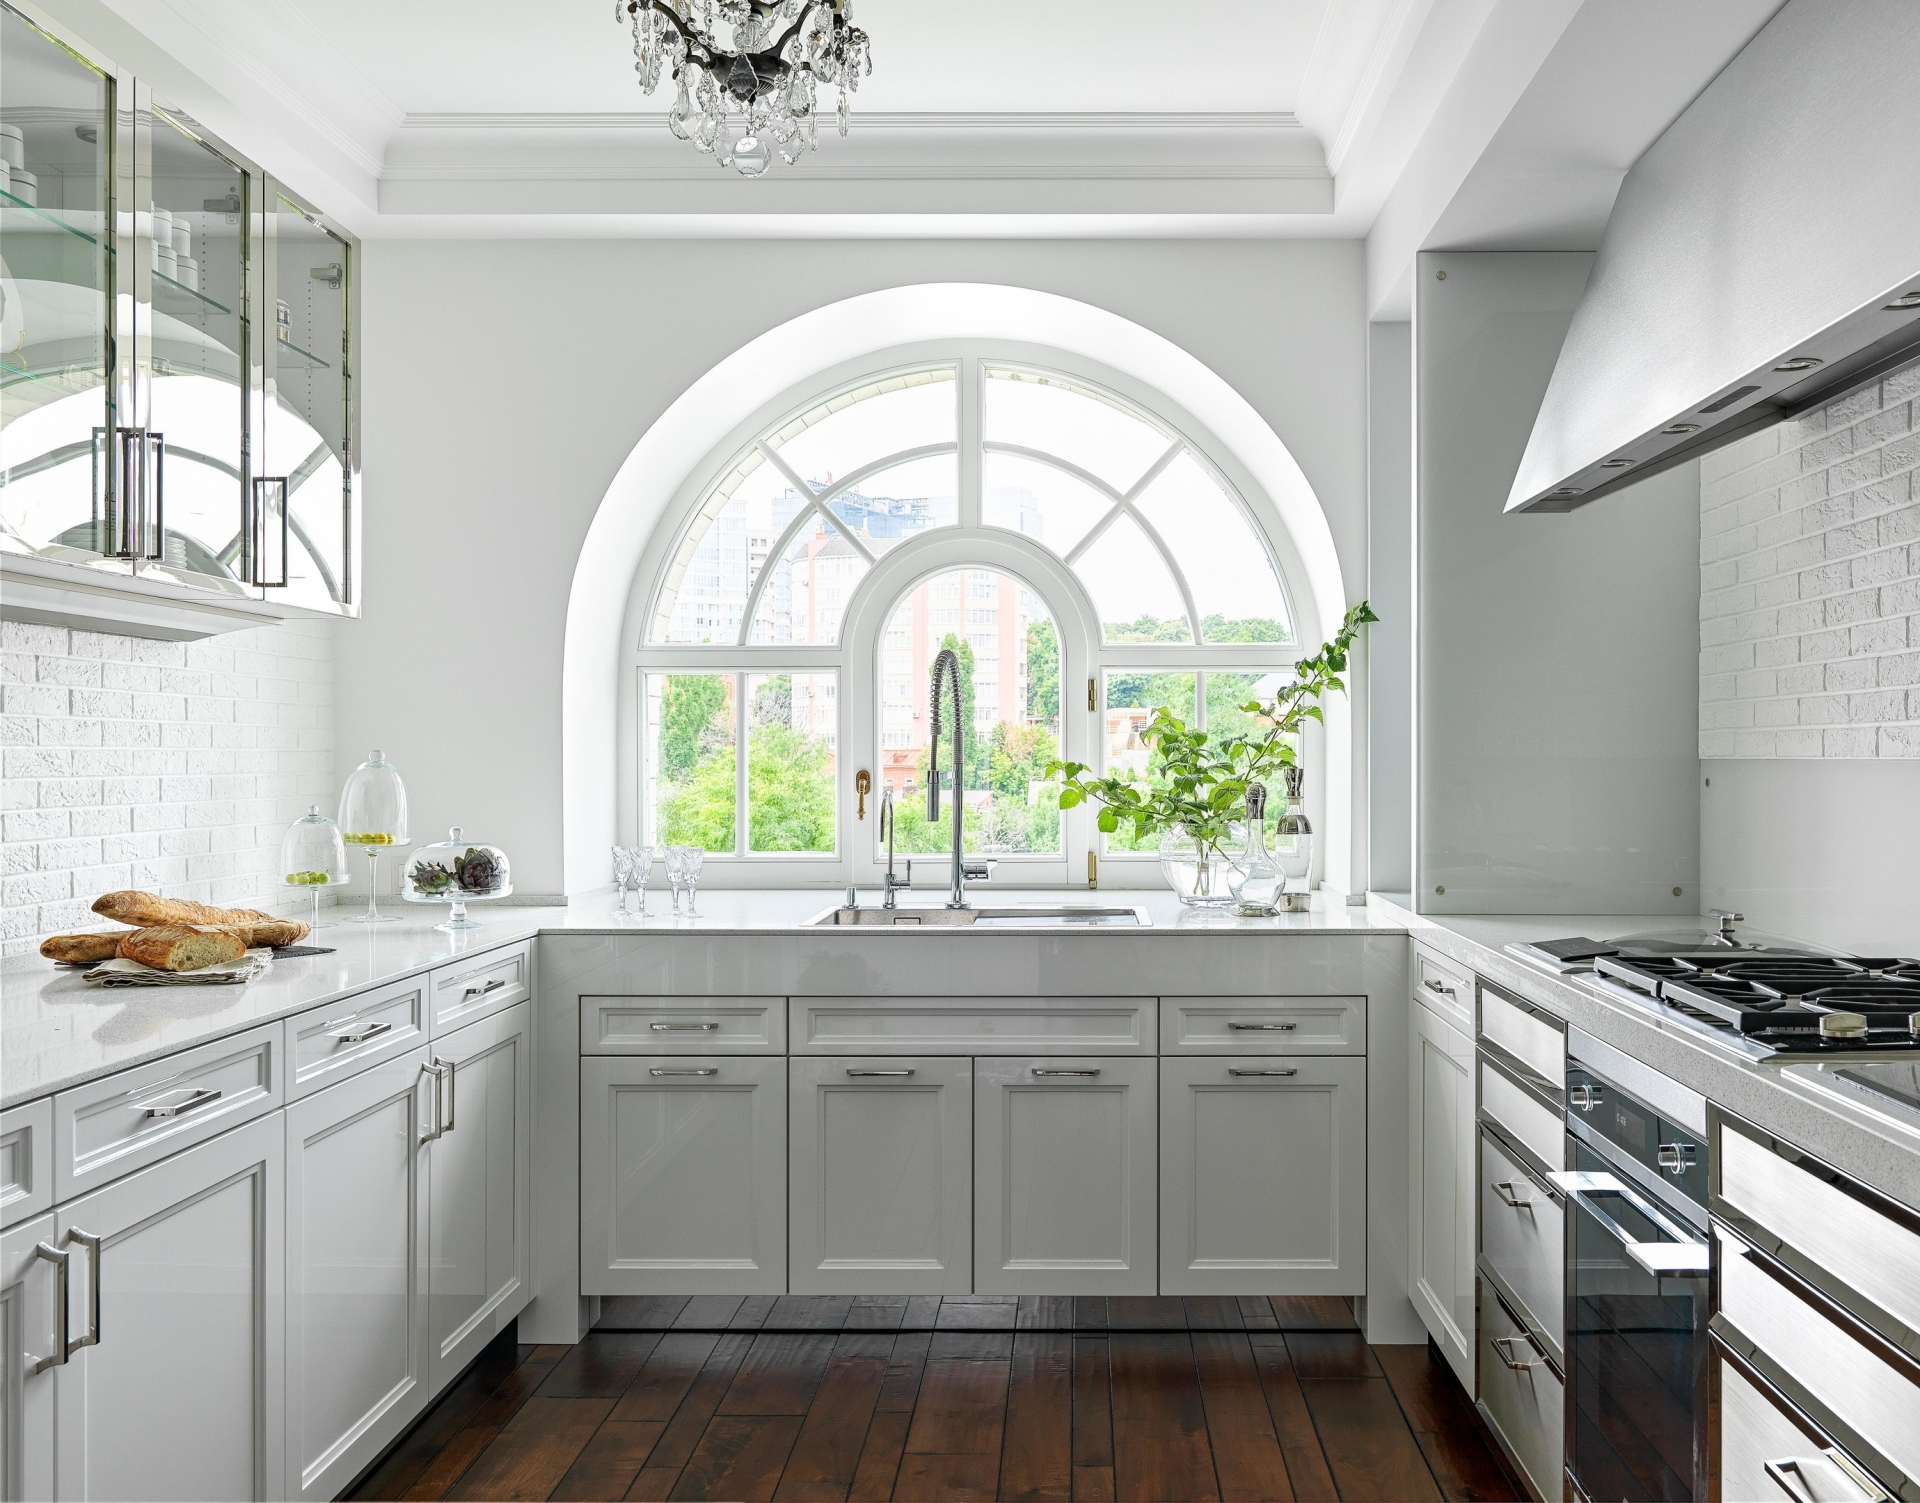 Phòng bếp được thiết kế kiểu chữ U, phù hợp với cấu trúc của những căn hộ diện tích rộng rãi, có không gian riêng cho khu vực nấu nướng. Ô cửa sổ kiểu dáng mái vòm cổ điển, trang thiết bị tiện nghi và hiện đại.